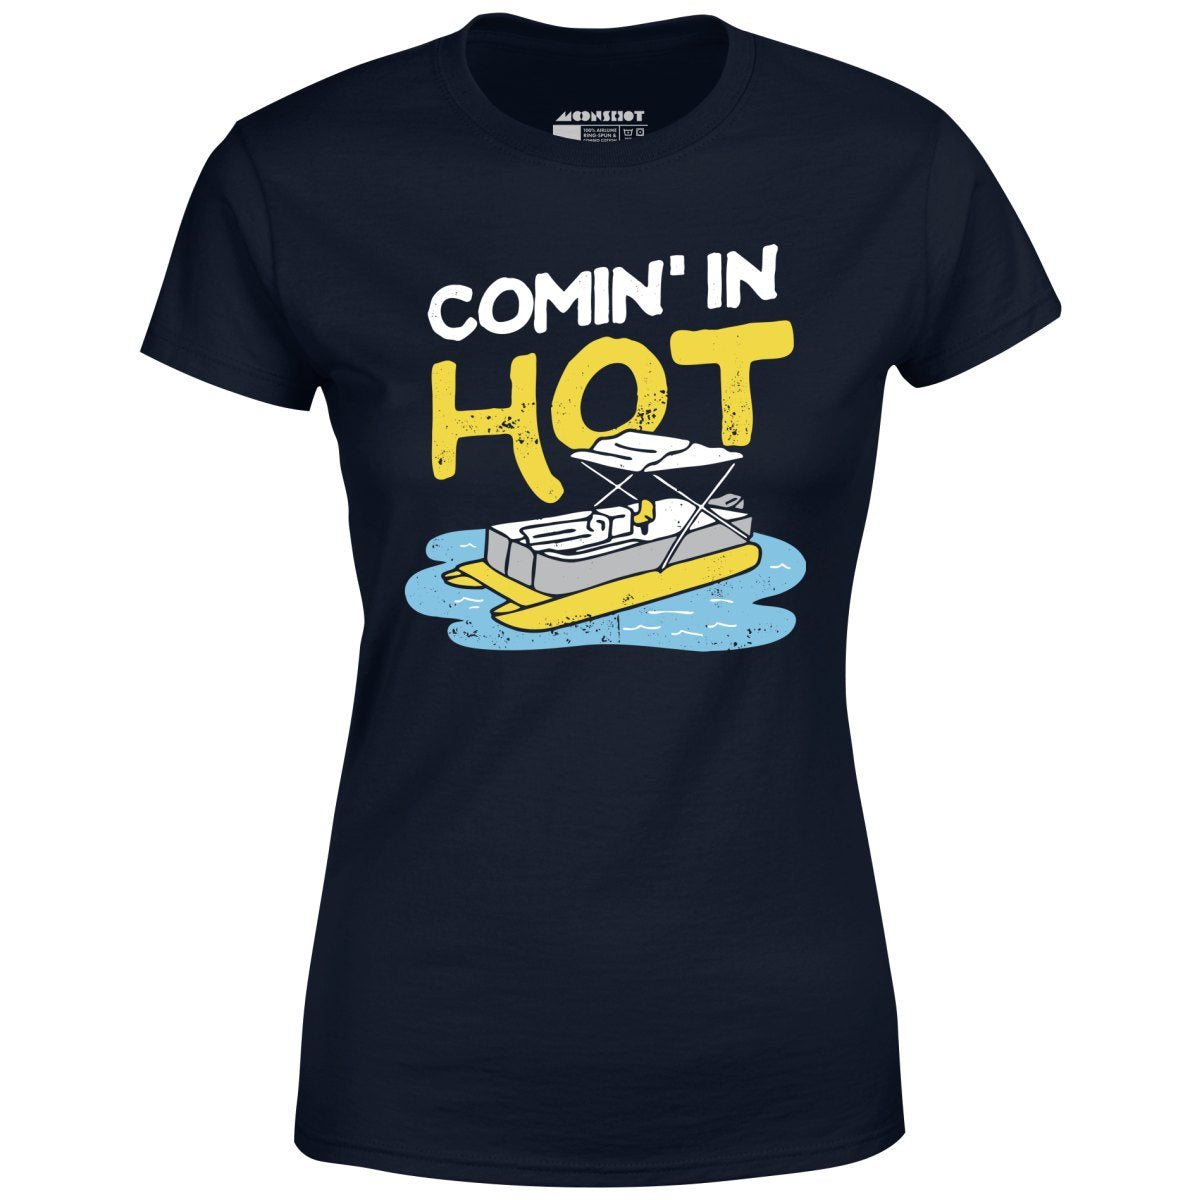 Comin' in Hot - Women's T-Shirt